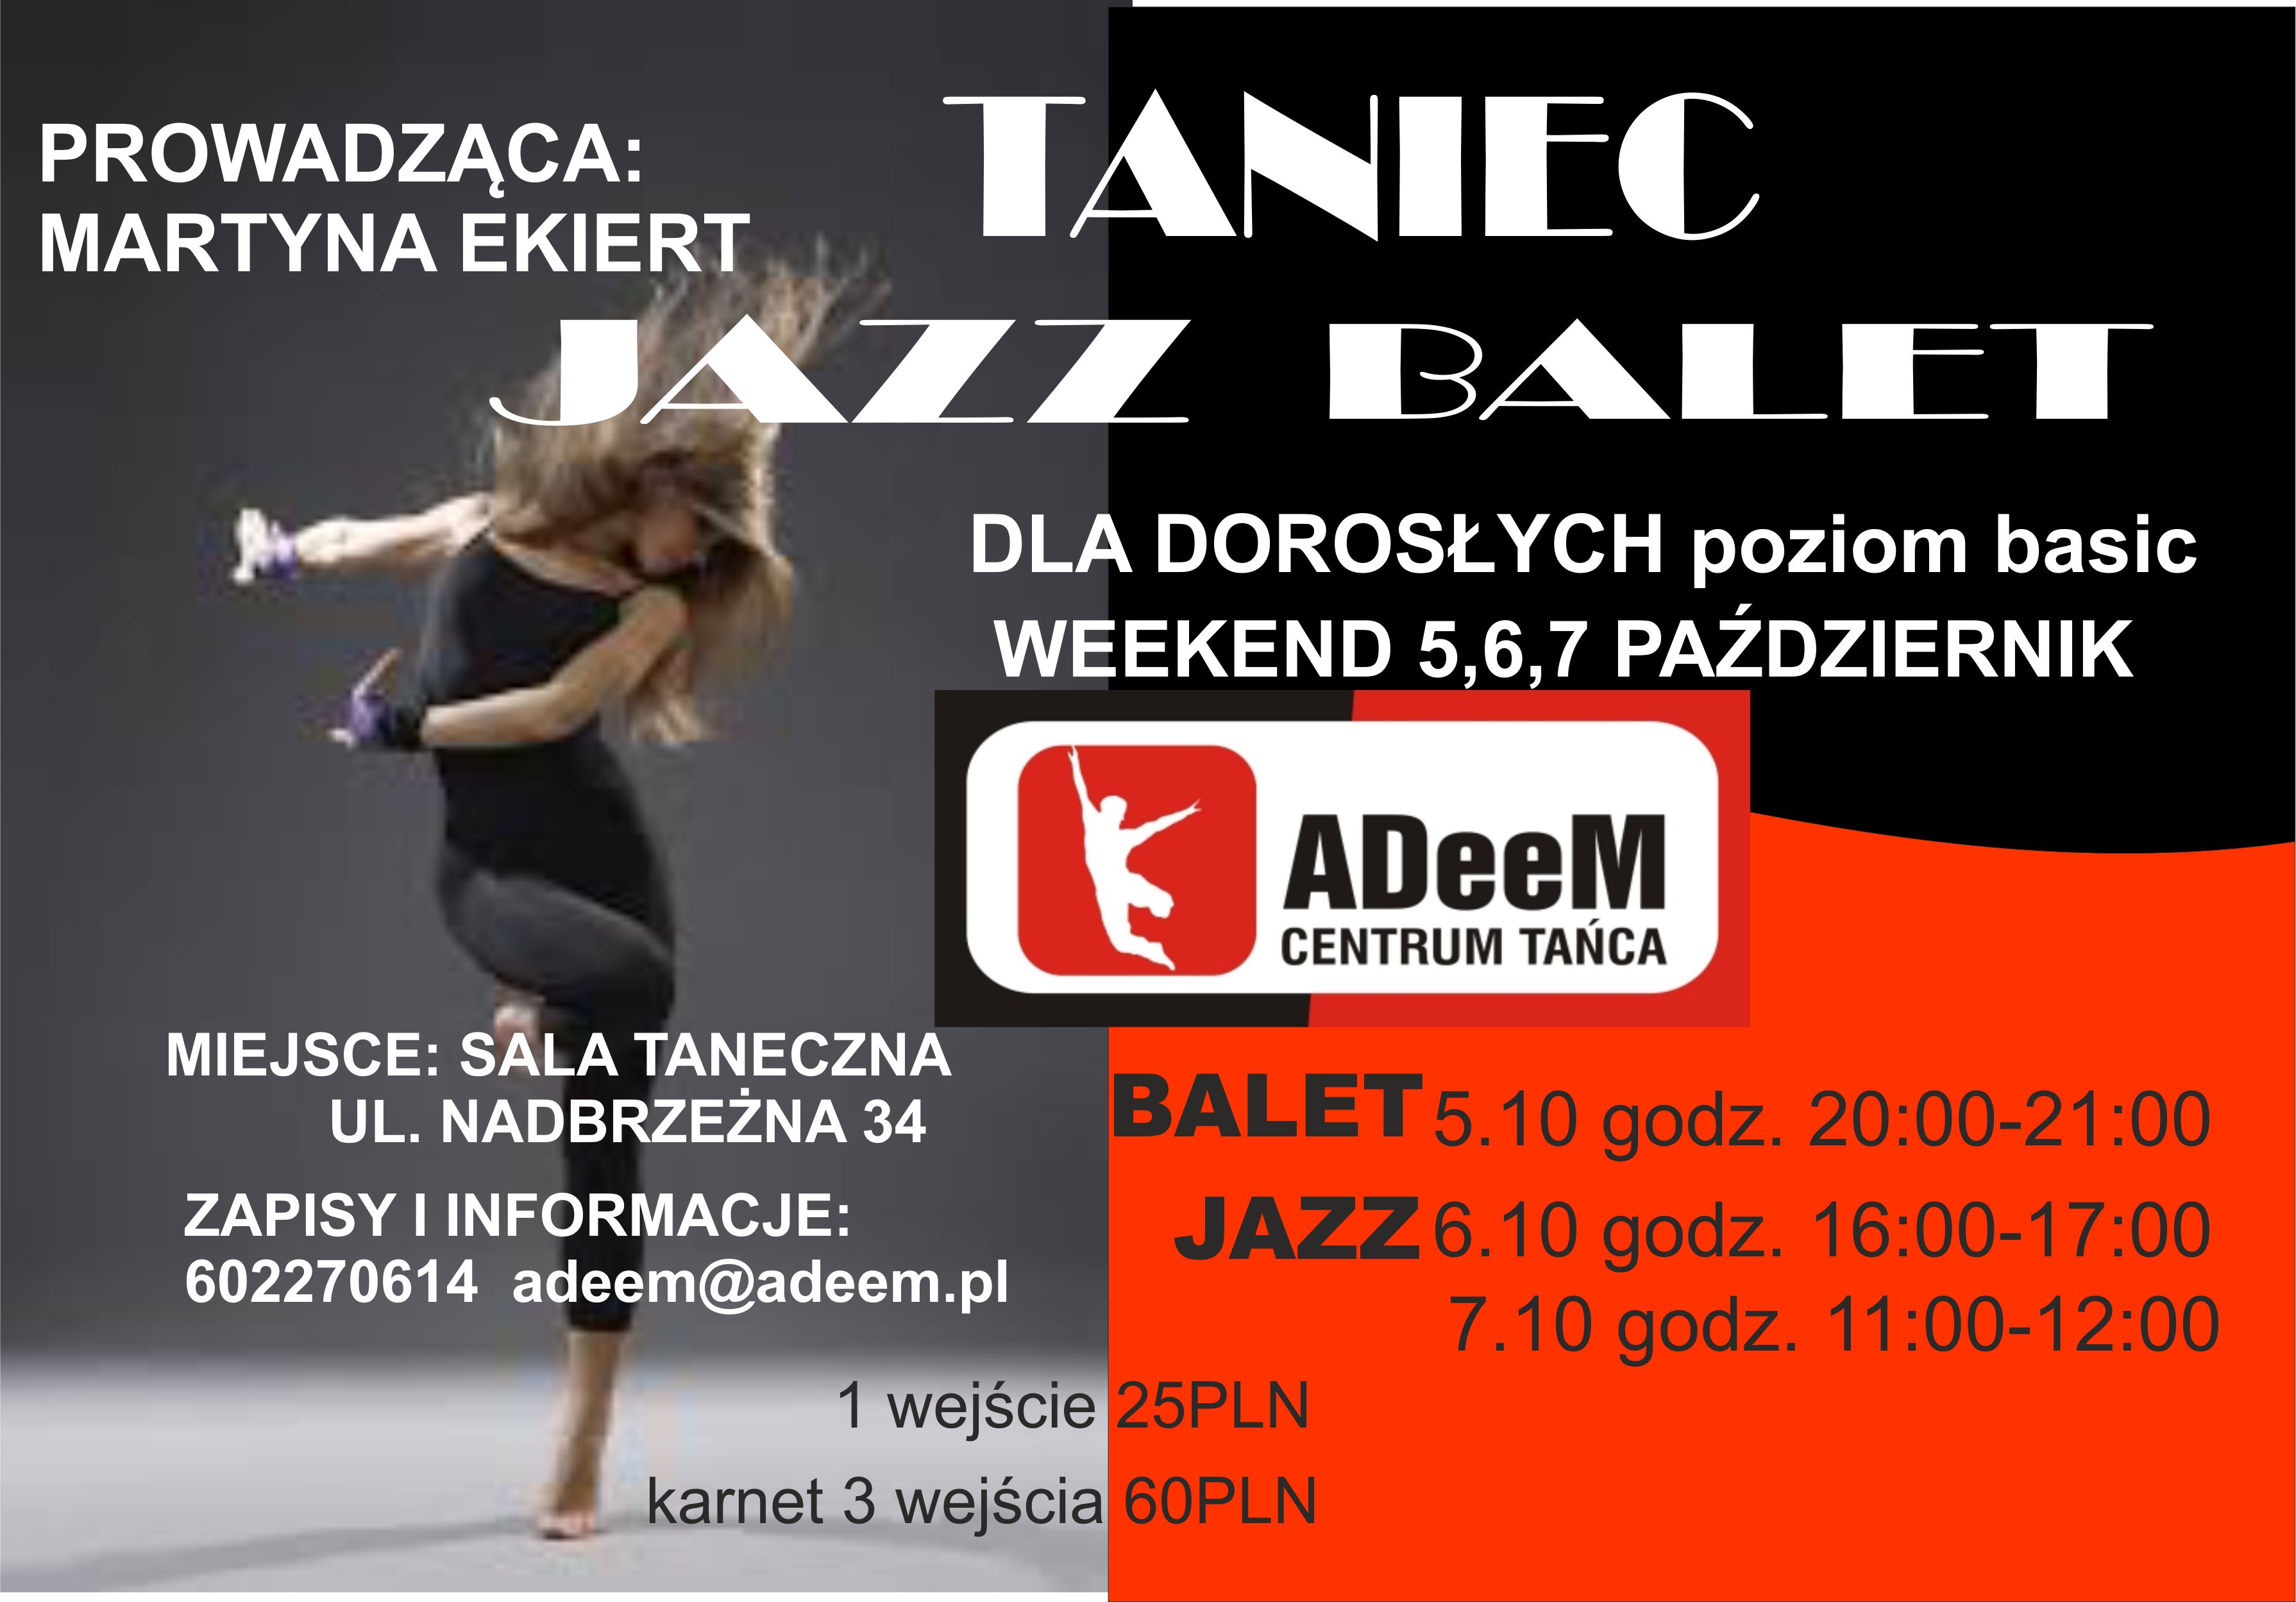 warszaty balet jazz 10